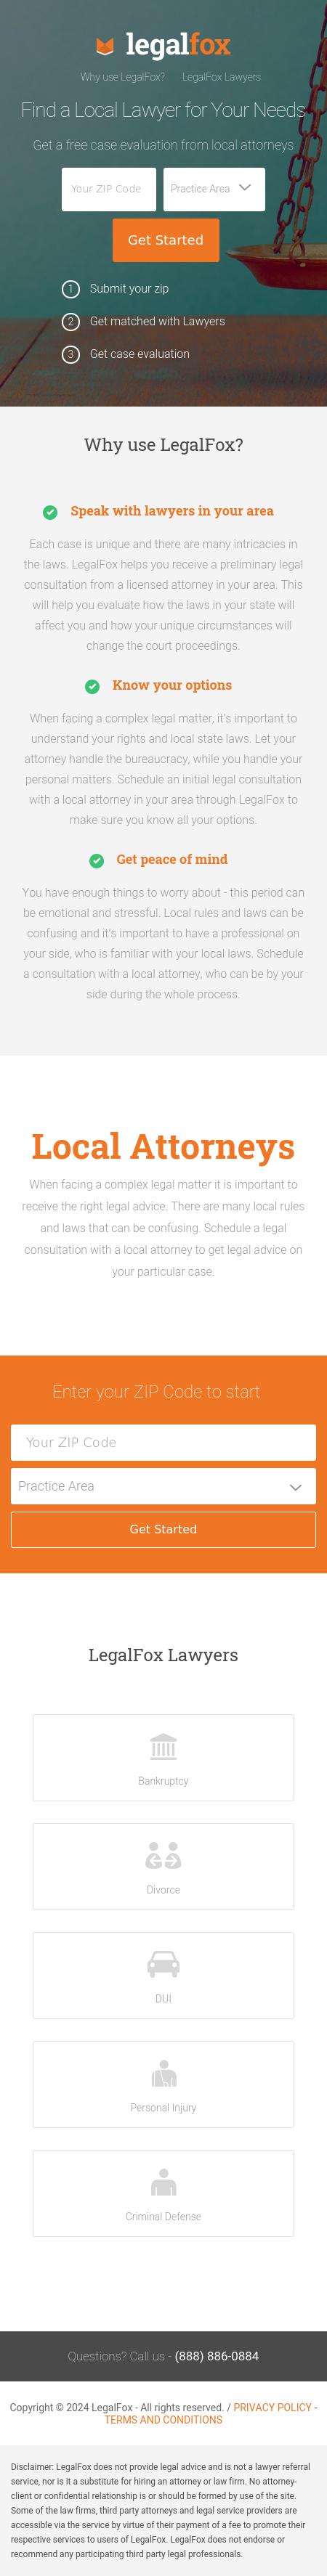 Find a Local Attorney - San Diego CA Lawyers